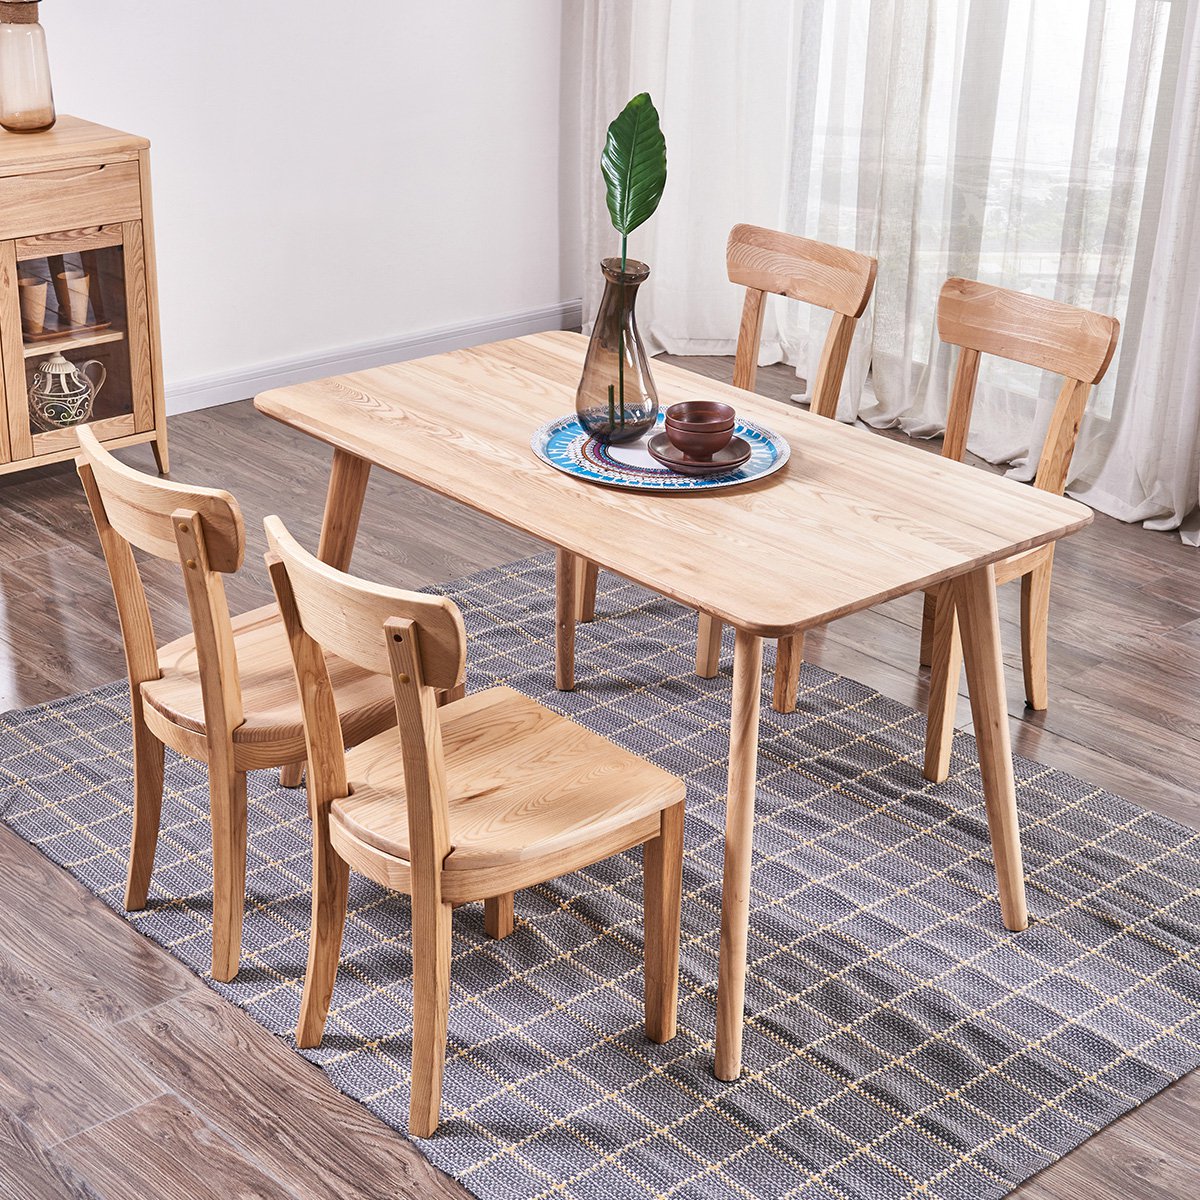 餐桌椅组合胡桃木色一桌四椅饭桌白蜡木日式简约餐厅家具dh601n